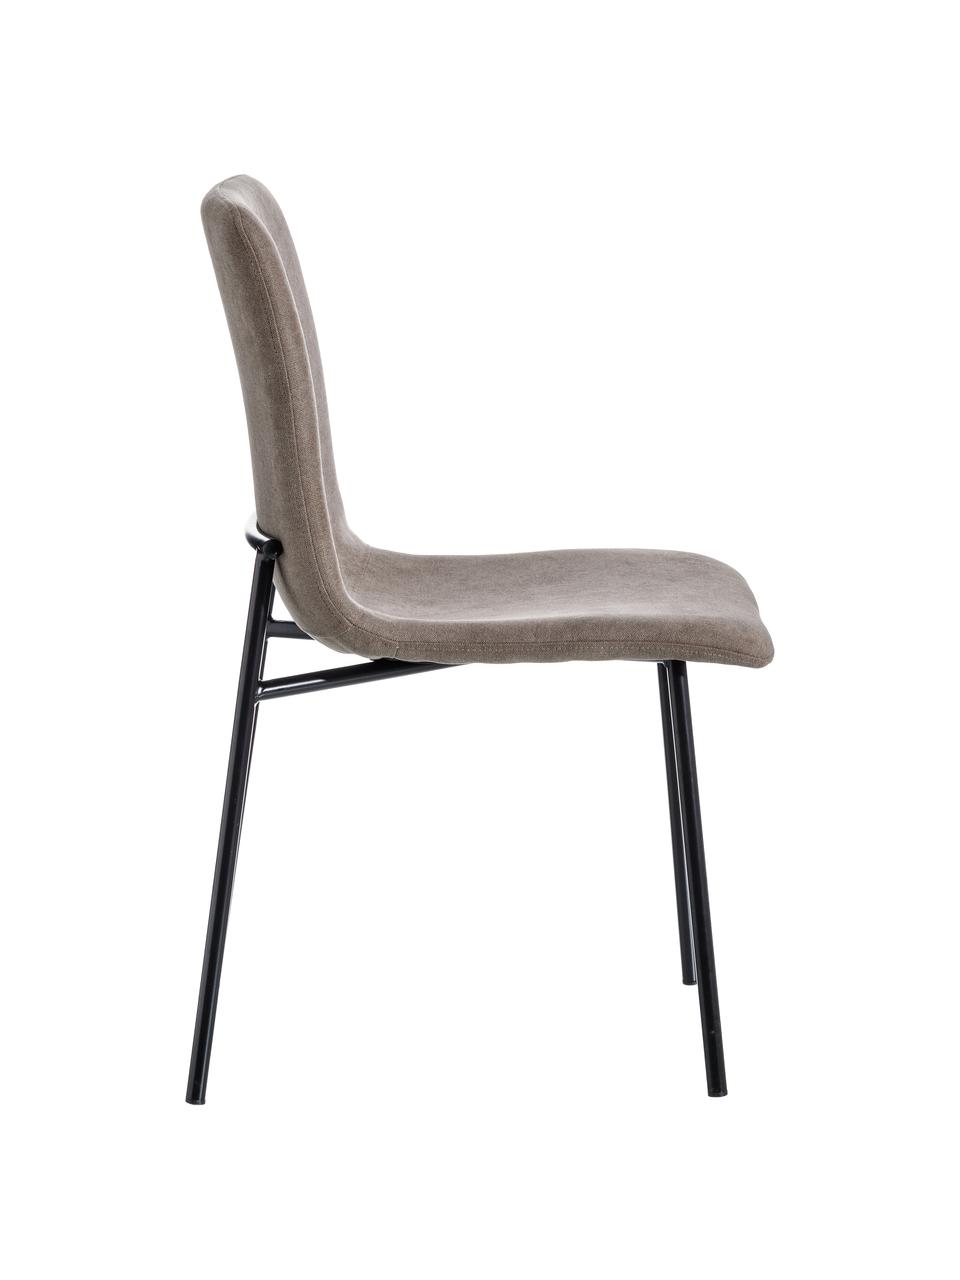 Krzesło tapicerowane Sofia, Tapicerka: poliester, Nogi: metal lakierowany, Brązowy, S 55 x G 45 cm